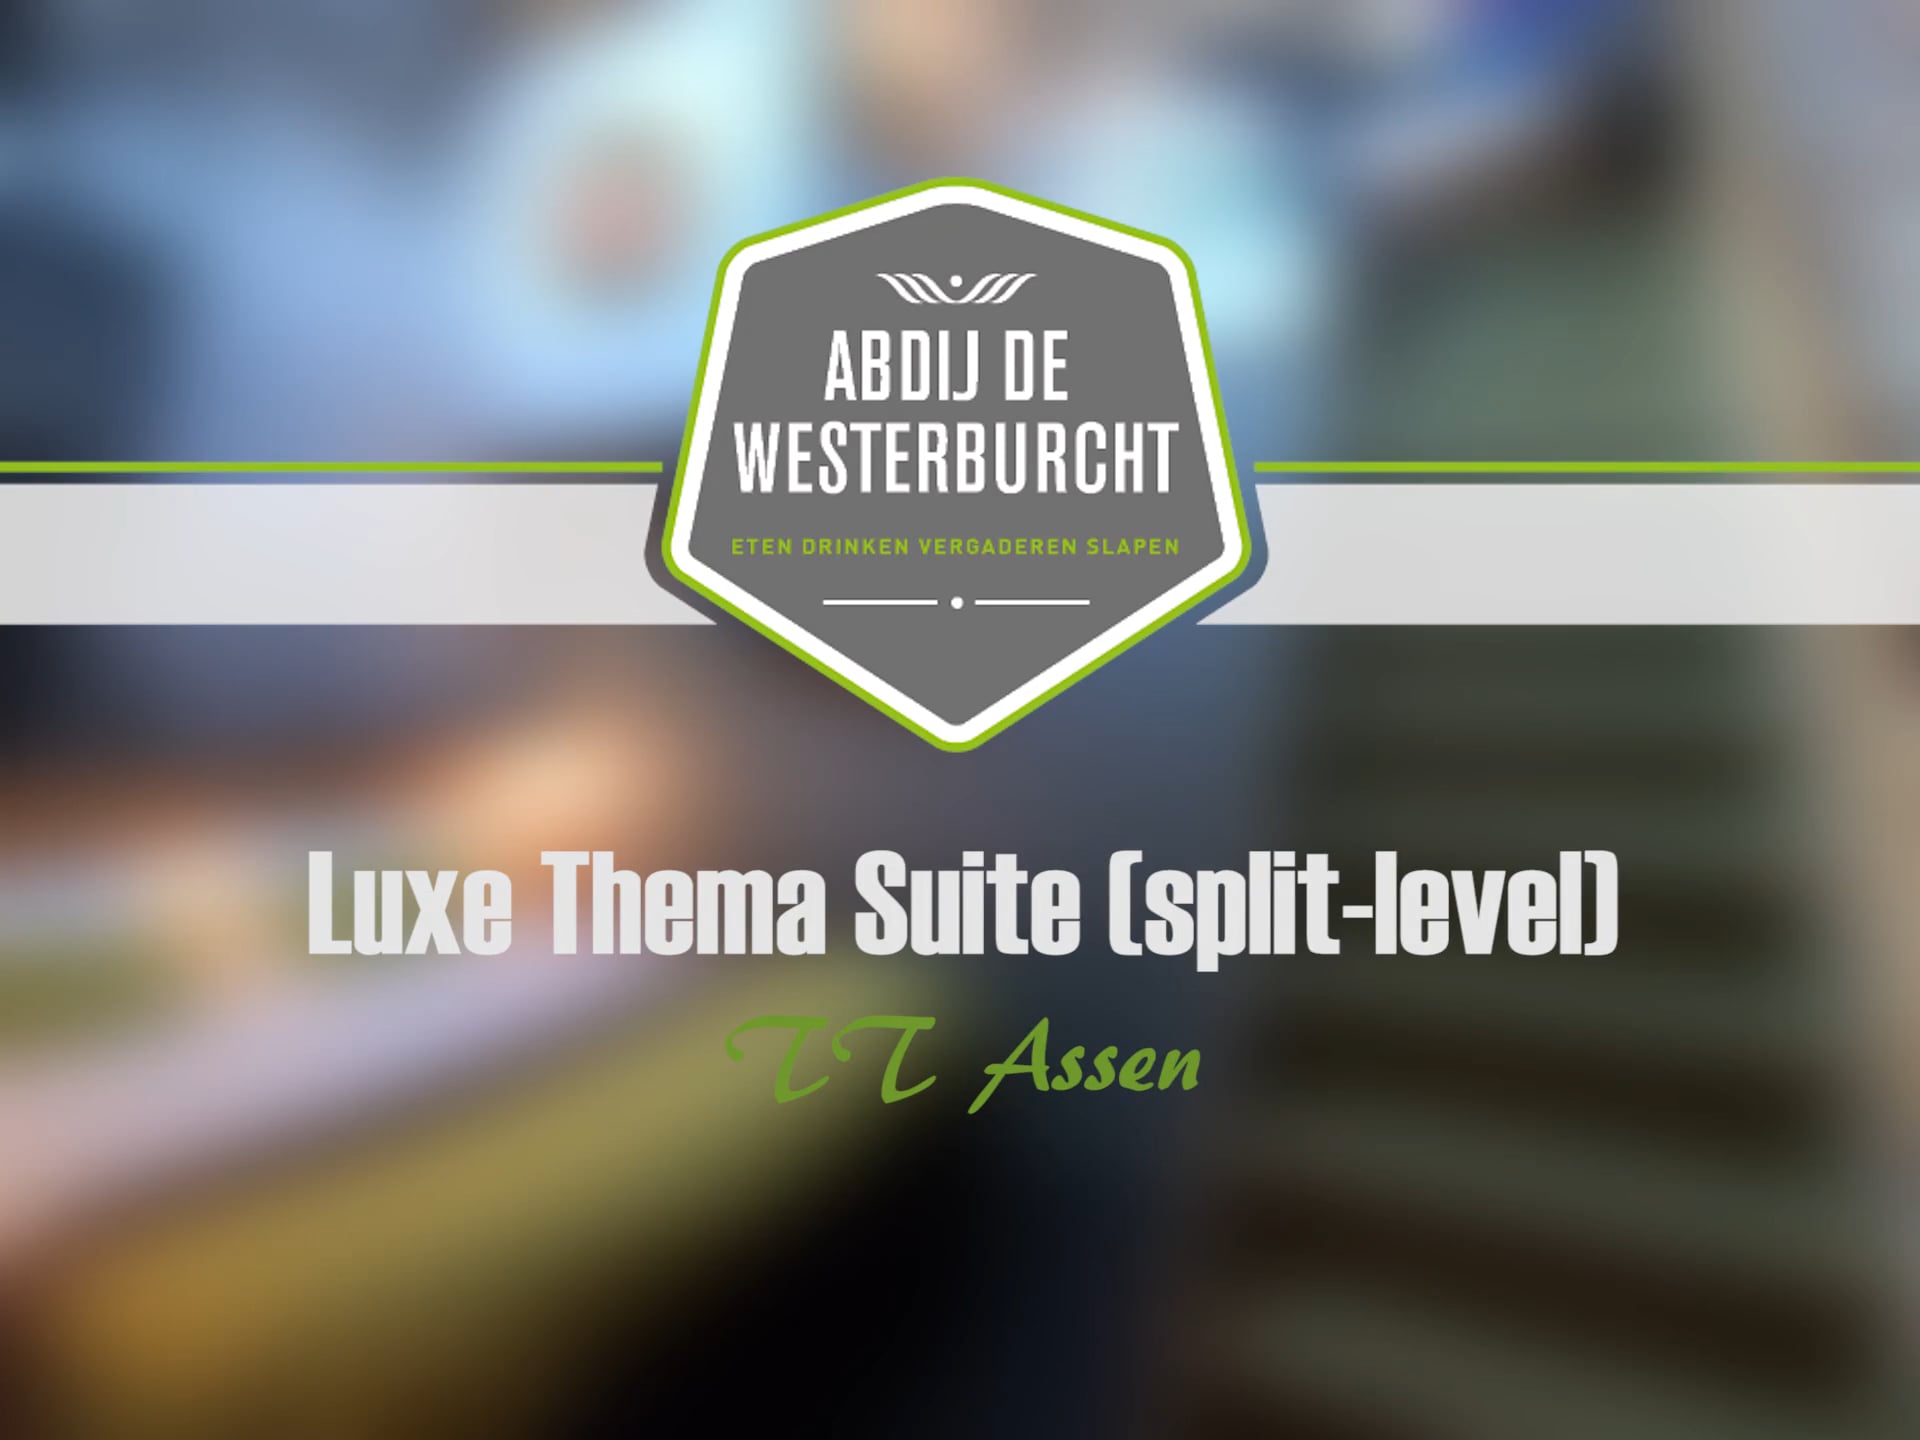 Luxe Thema Suite TT Assen Hotel Abdij de Westerburcht Drenthe